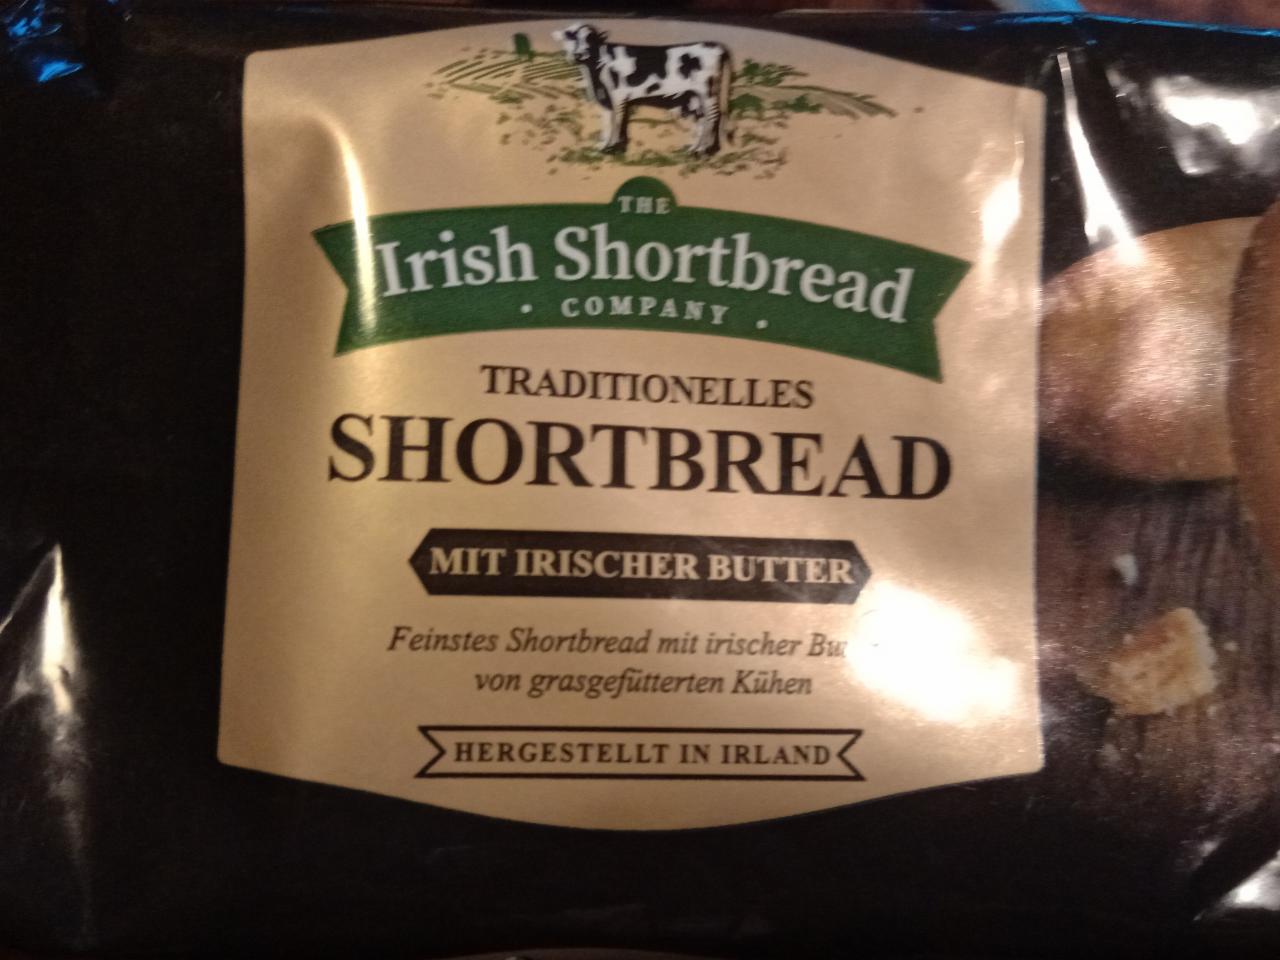 Fotografie - Shortbread mit Irischer Butter The Irish Shortbread Company